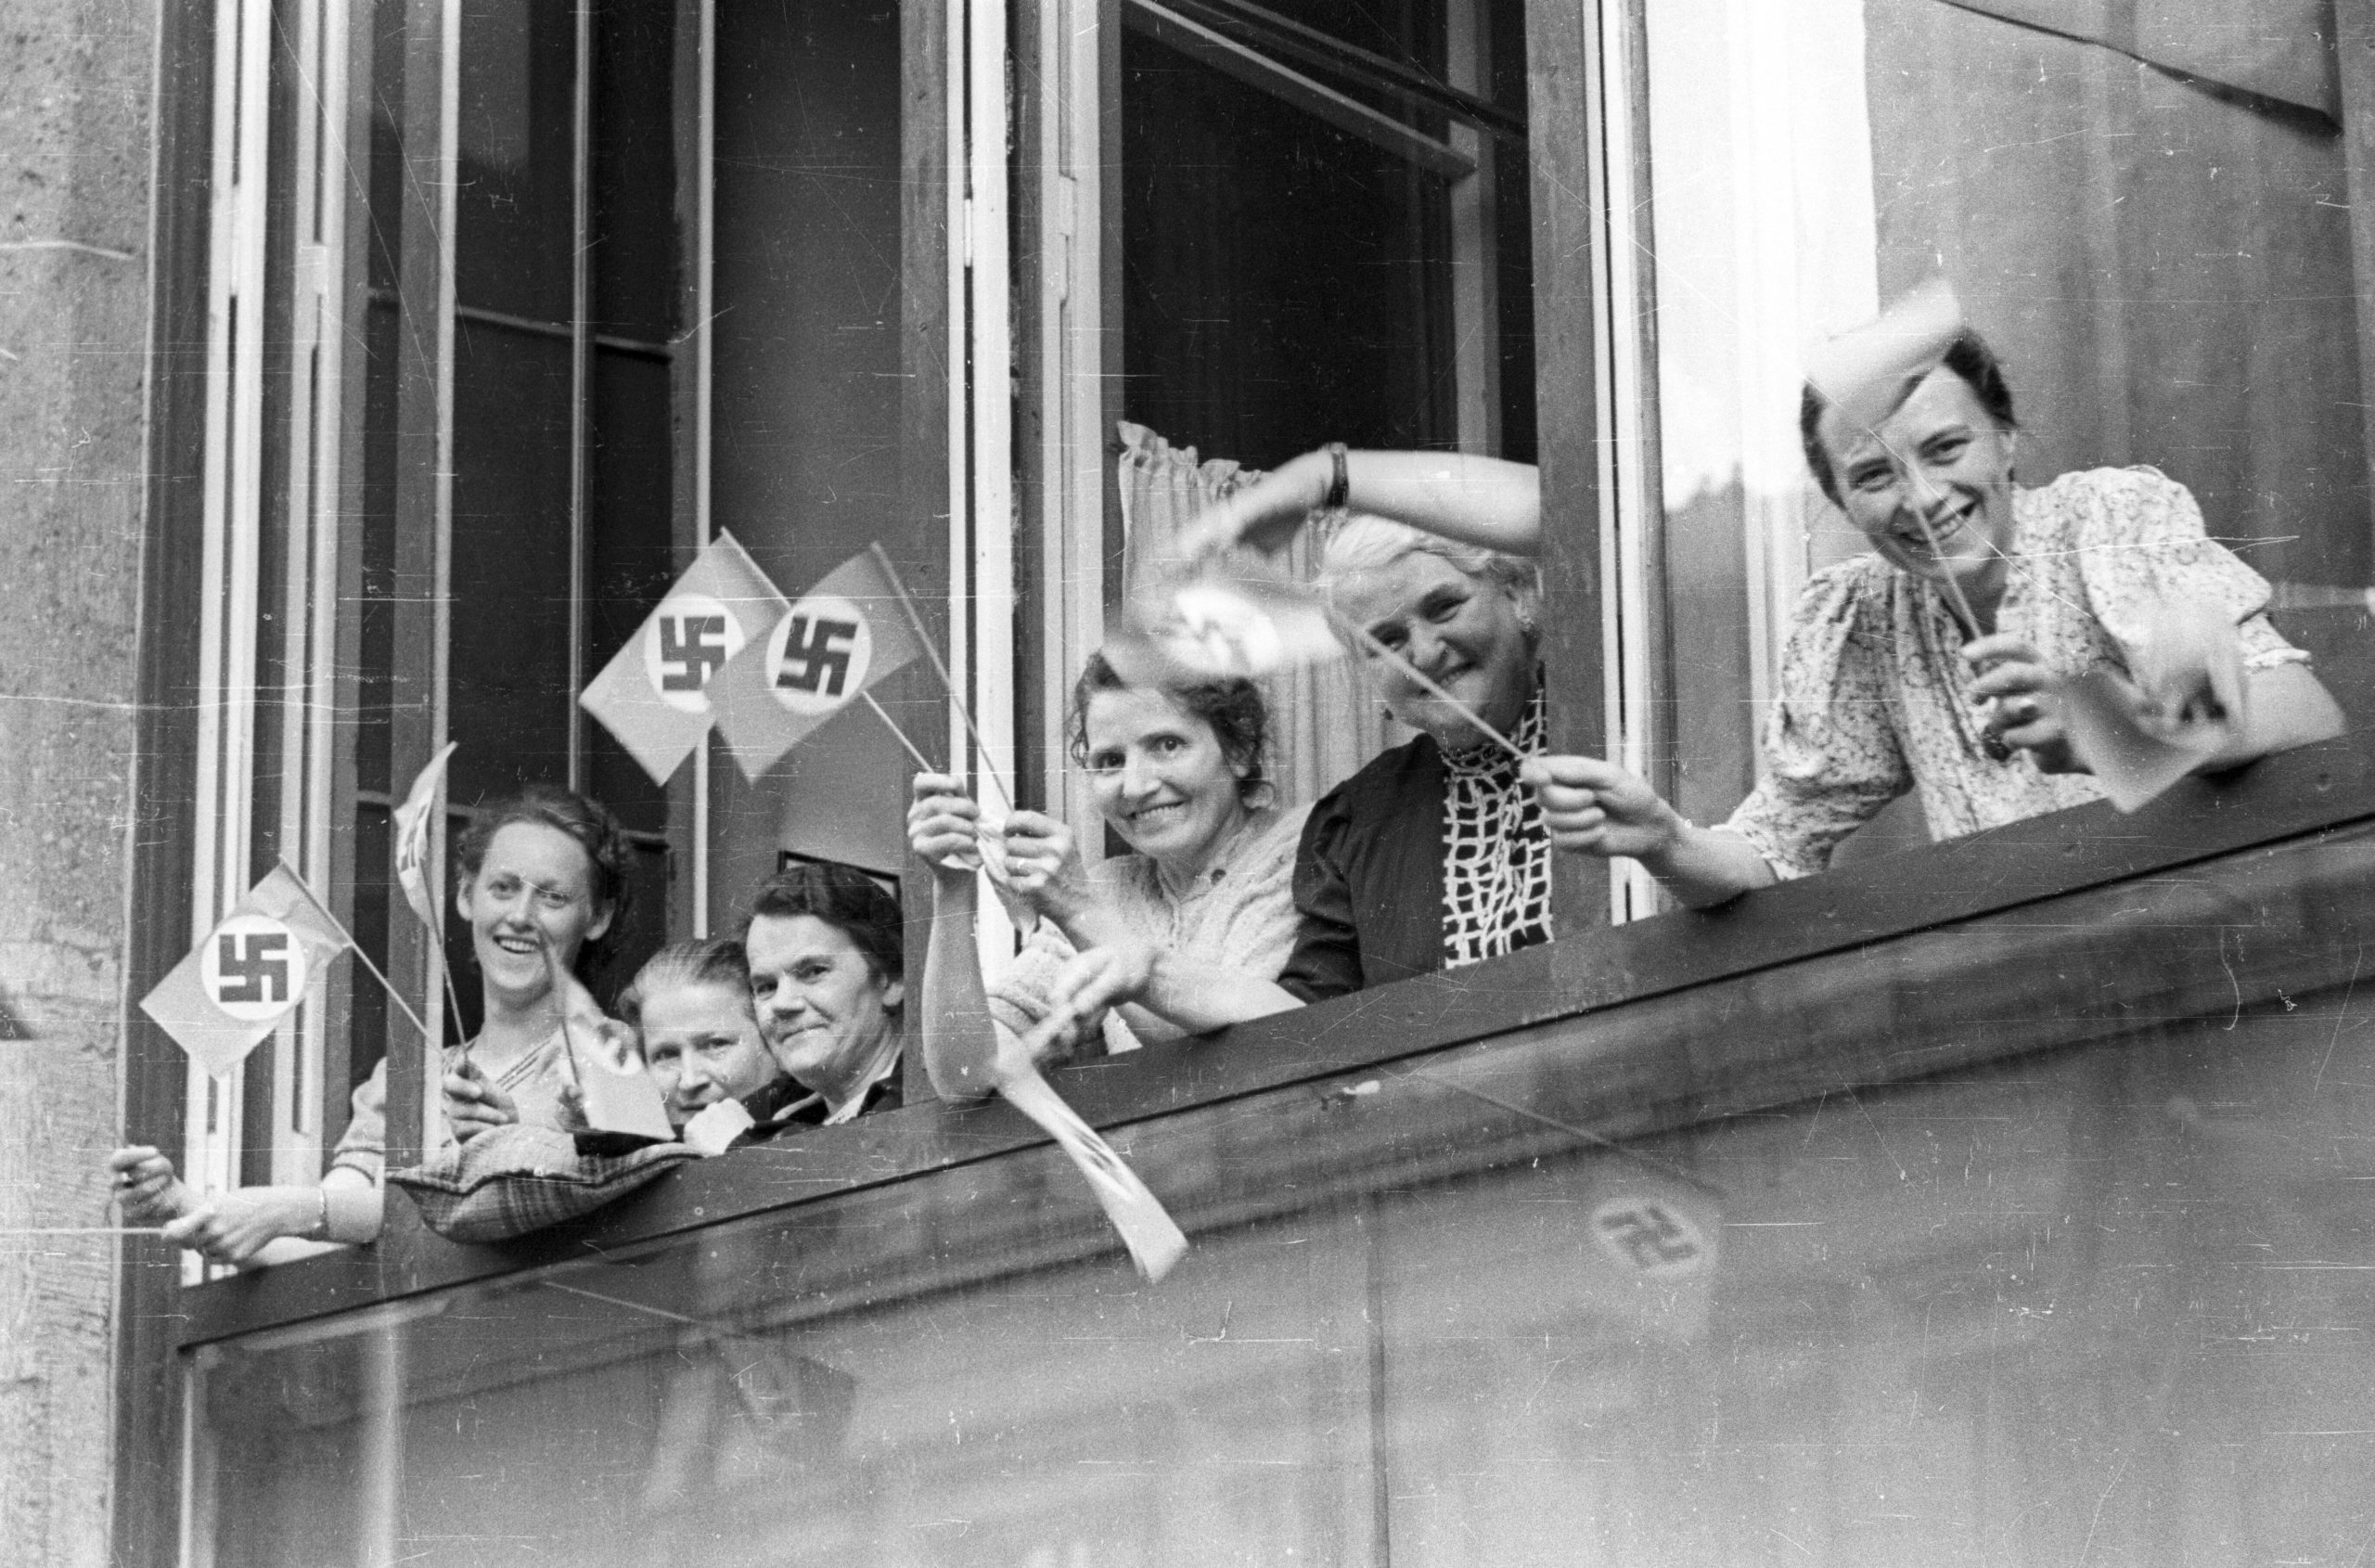 Berlin im Dritten Reich: NSDAP Reichsparteitag – Frauen mit Hakenkreuzfähnchen stehen am Fenster und warten, dass der Führertross vorbeikommt, 1935. Foto: Imago/Horst Müller